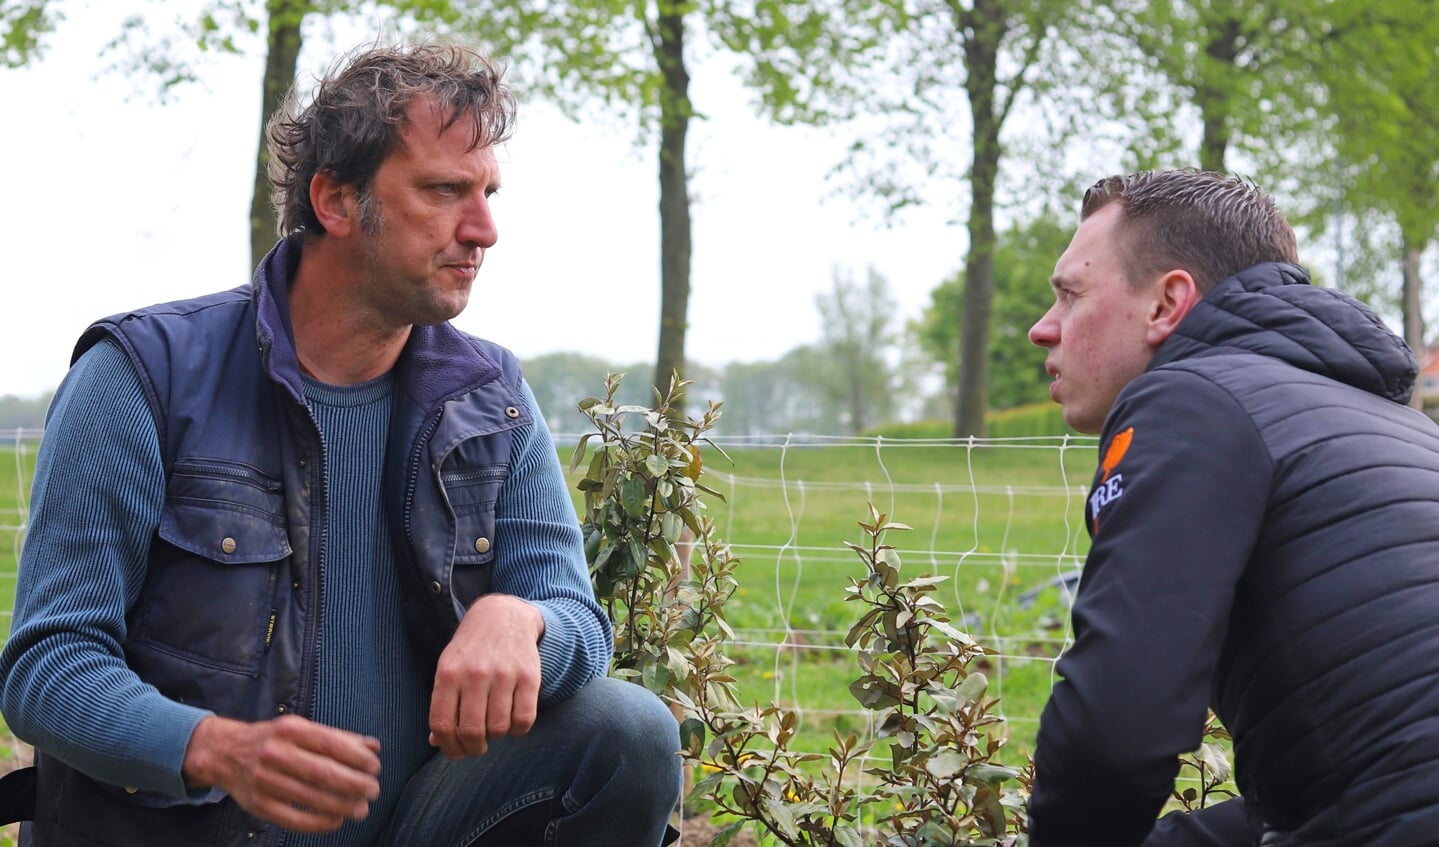 Ivo Pouw (links) bij de beginnende olijfwilgen in gesprek met Bjorn Massop van Villa Ruimzicht. Foto: Sander Grootendorst